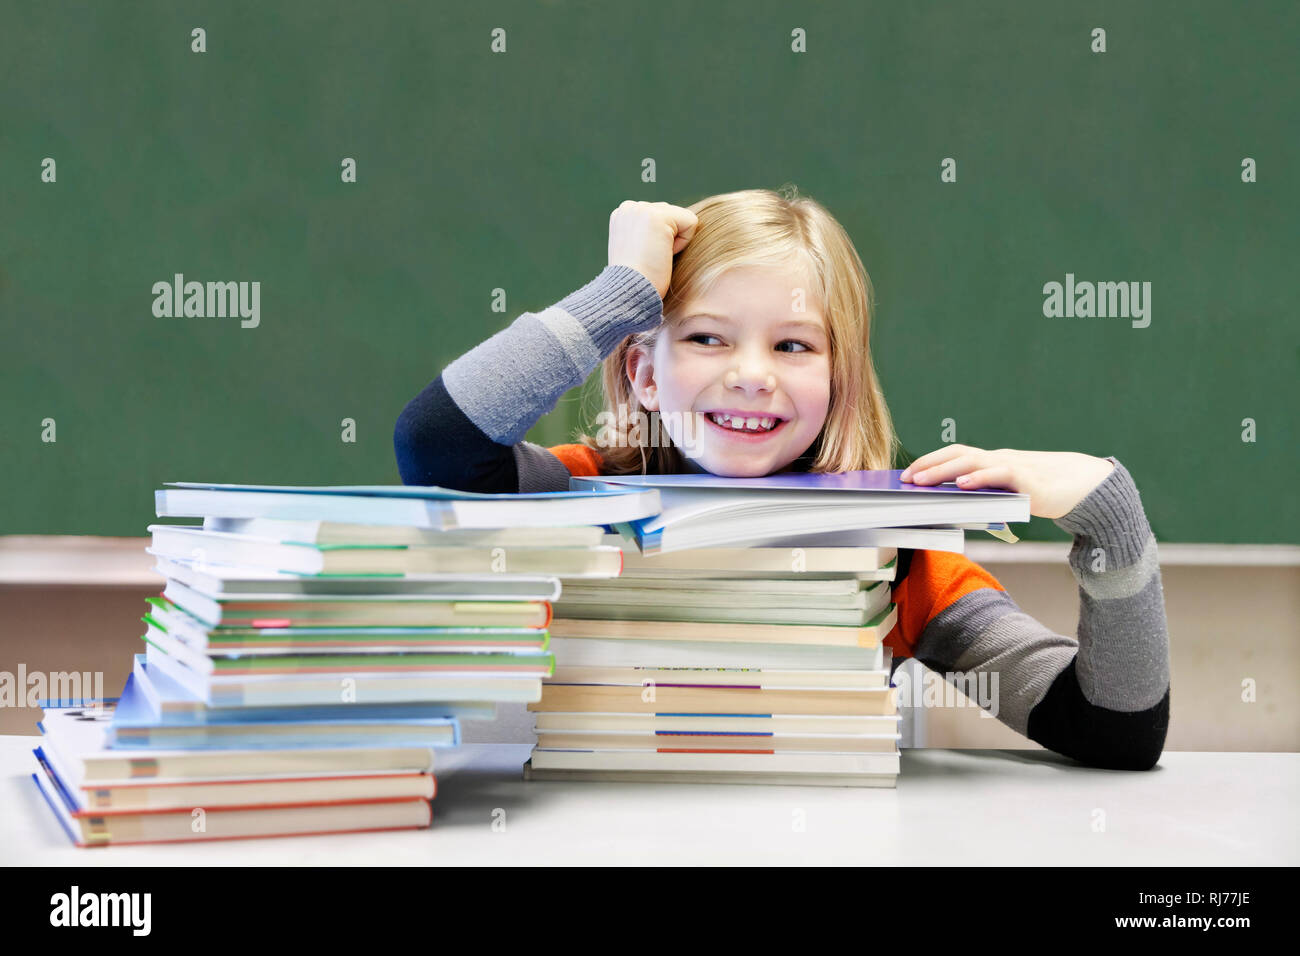 Schülerin, 9 Jahre alt, lächelnd vor zwei Stapeln Bücher vor einer Tafel Foto Stock